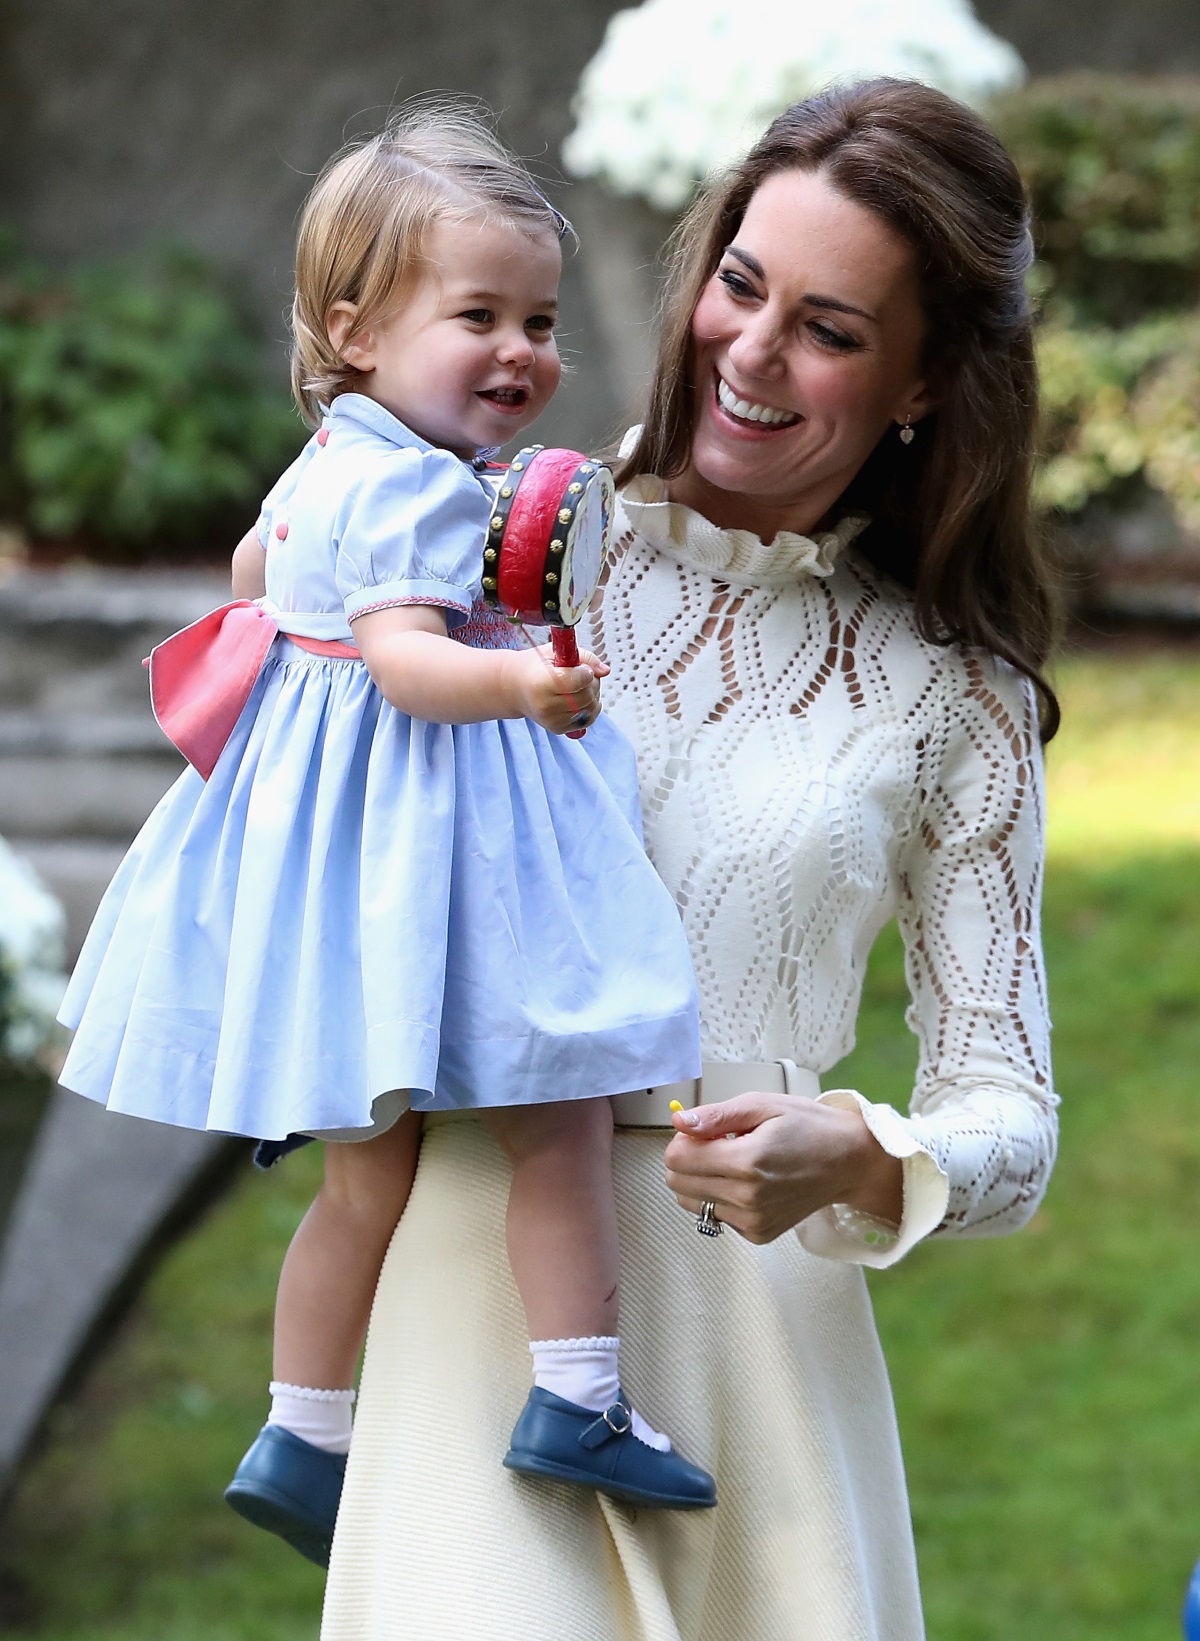 Британската принцеса Шарлот проговори за първи път пред публика по време на посещението на родителите ѝ, херцозите на Кембридж Уилям и Кейт, в Канада. Принцесата направи и своите първи стъпки пред пред широката аудитория. Това се случи на парти за деца на военни семейства във Виктория, Британската Колумбия